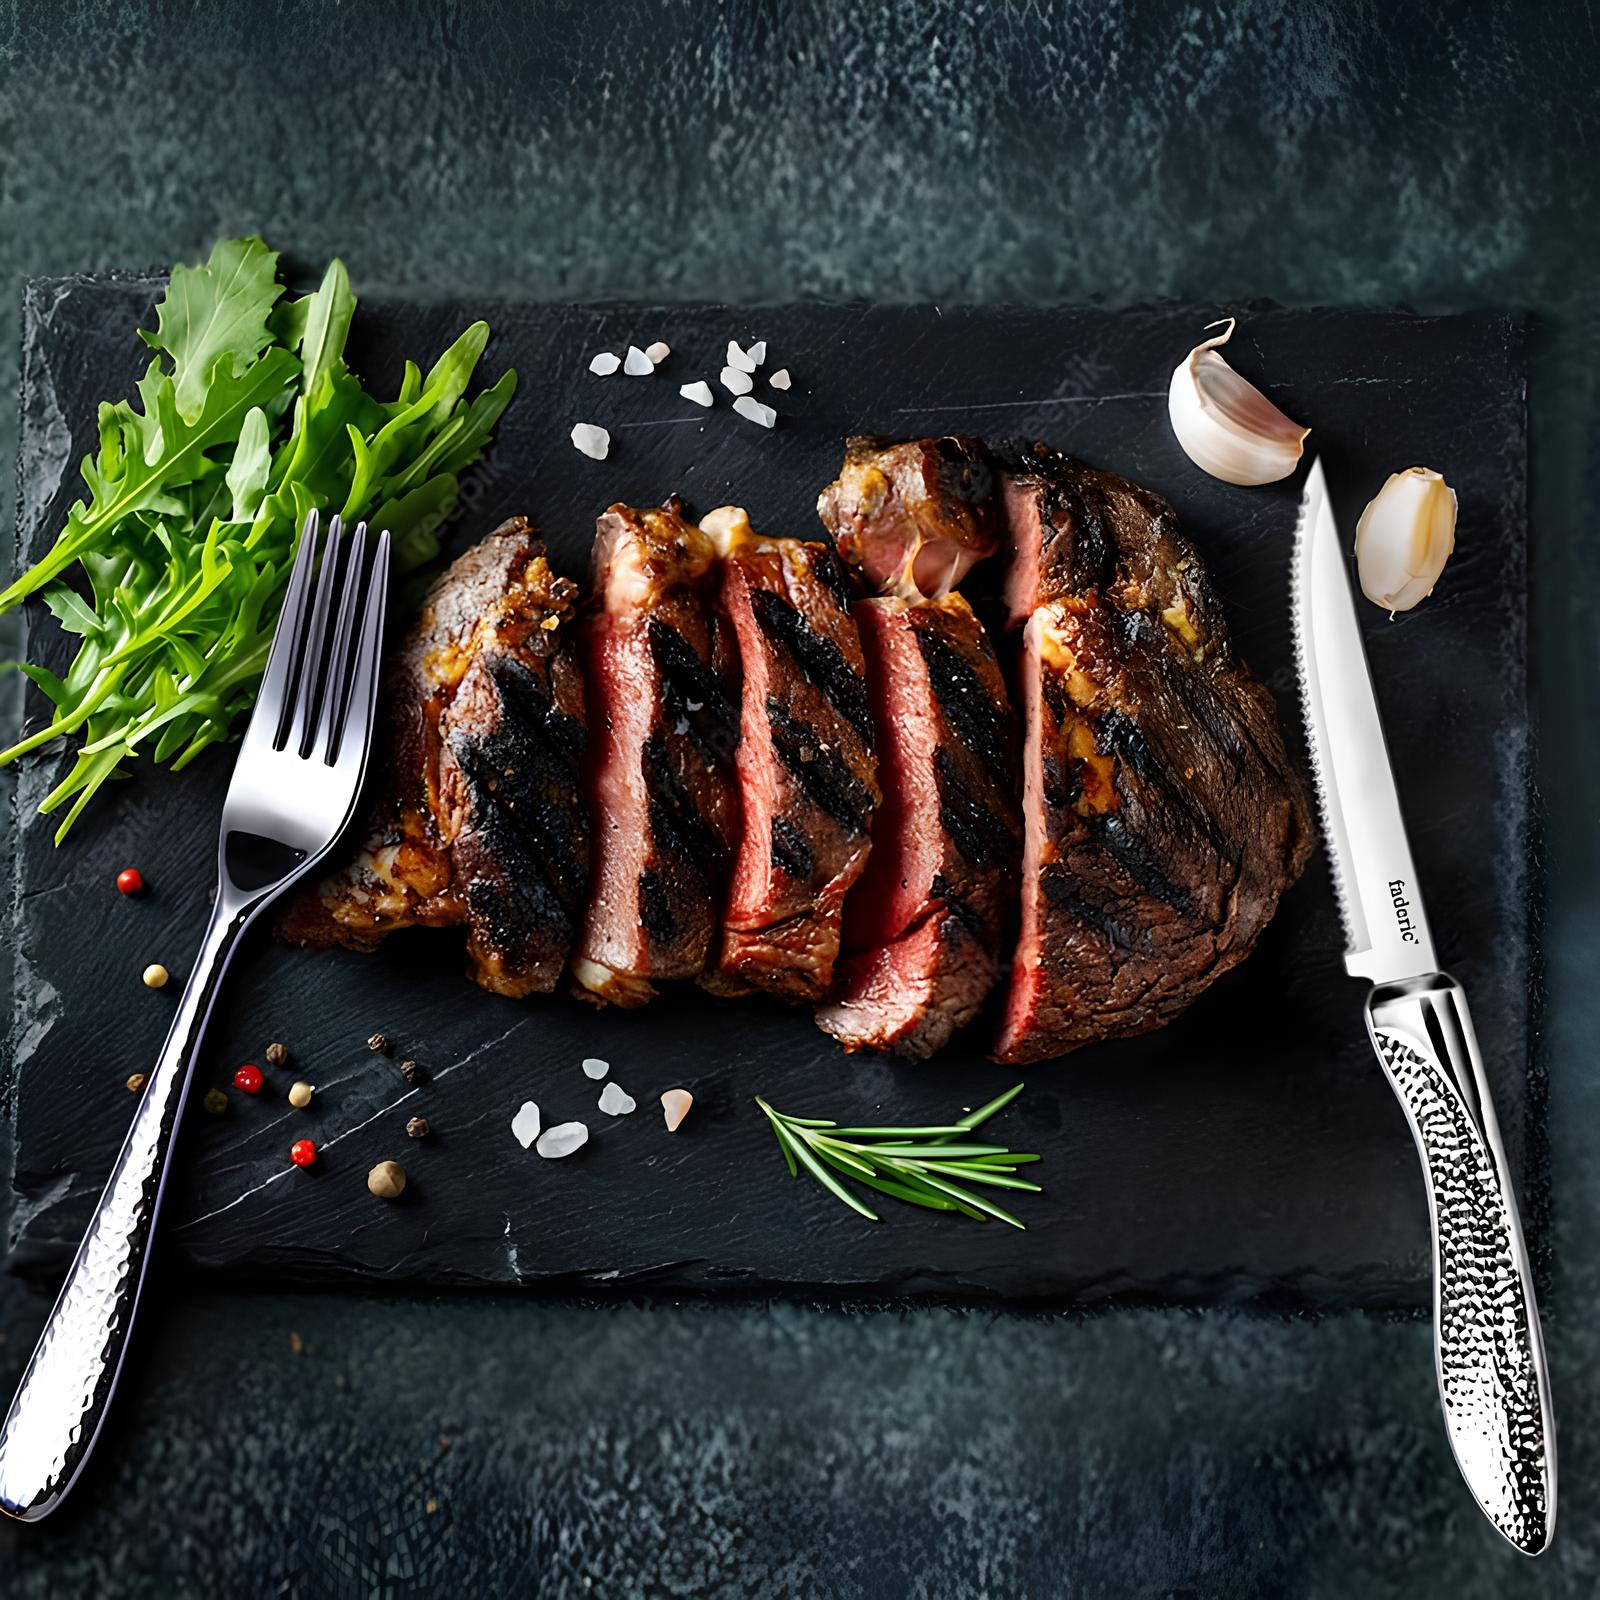 Couteaux à steak inoxydable lot de 6 - Les joyaux - UstensilesCulinaires